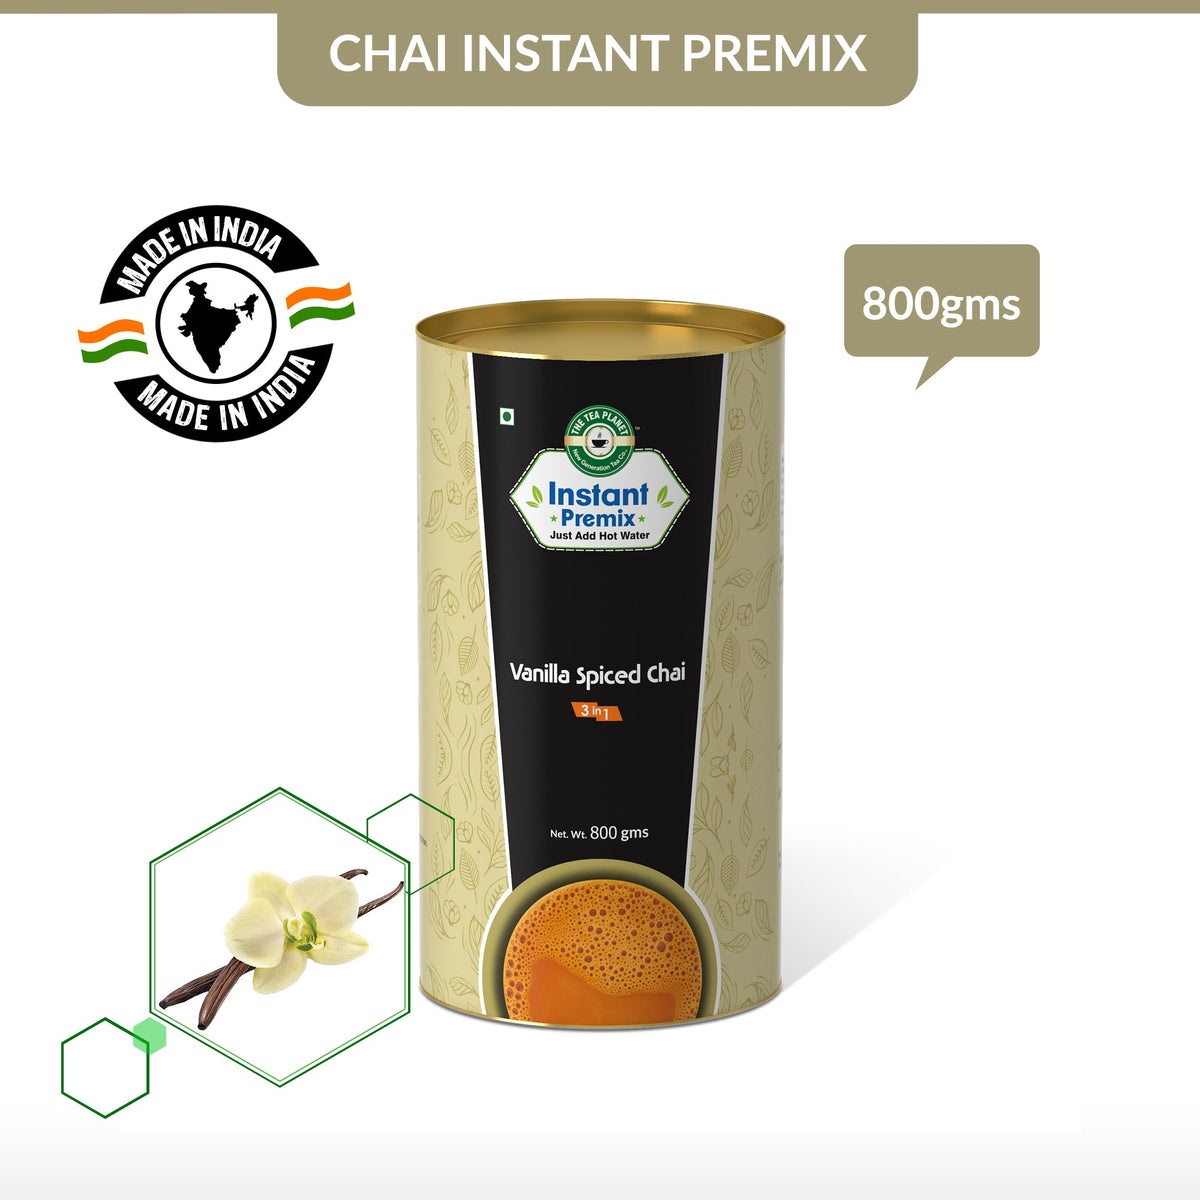 Vanilla Spiced Chai Premix (3 in 1)